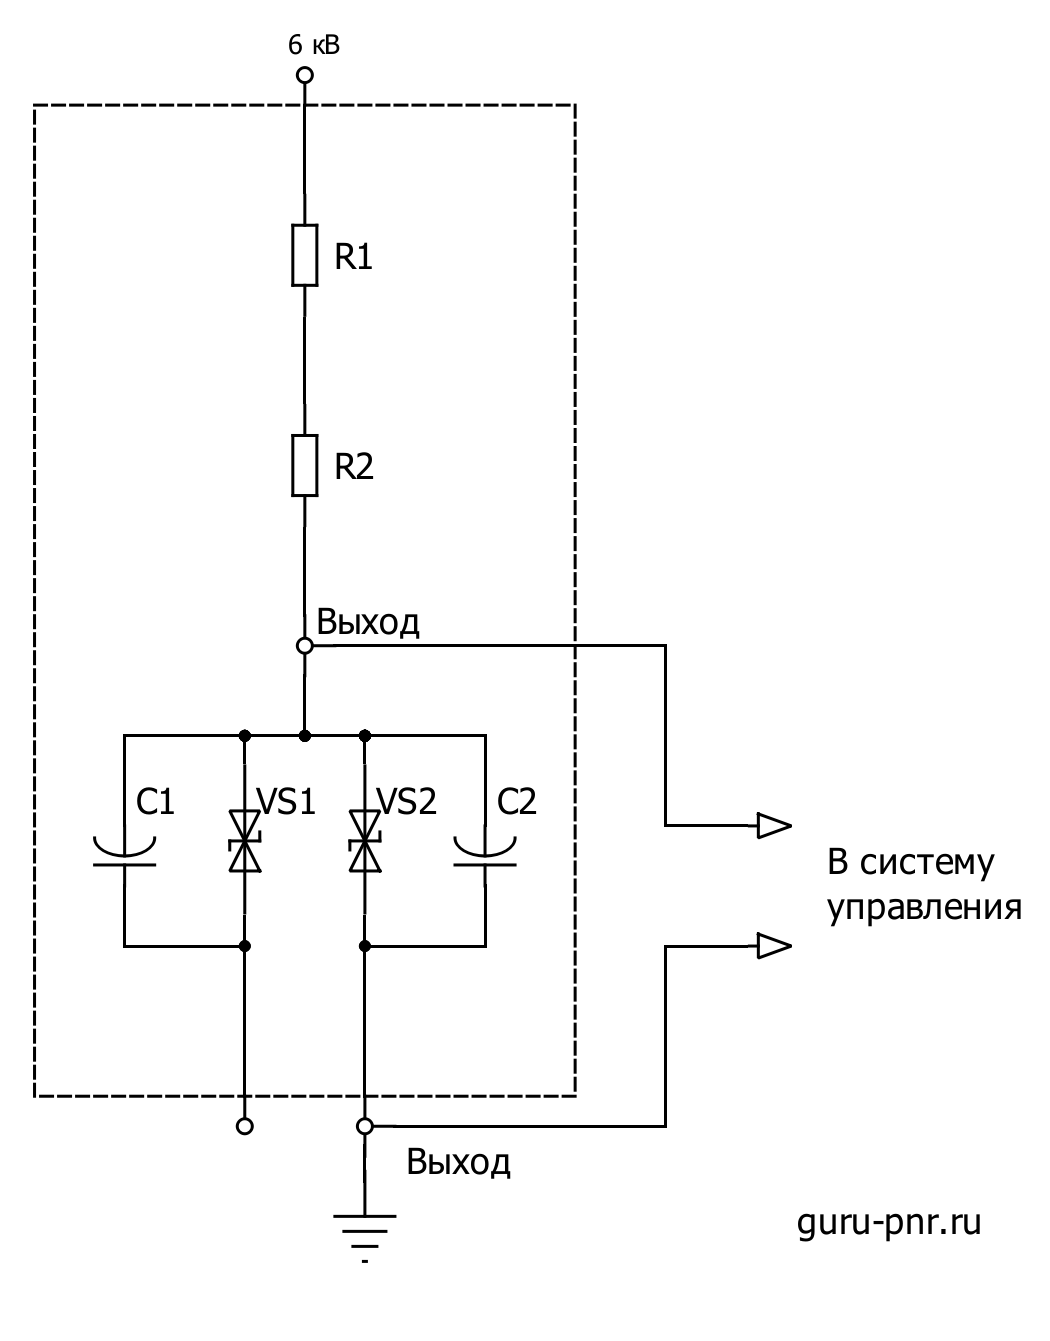 Схема аттенюатора для измерения напряжения 6 кВ